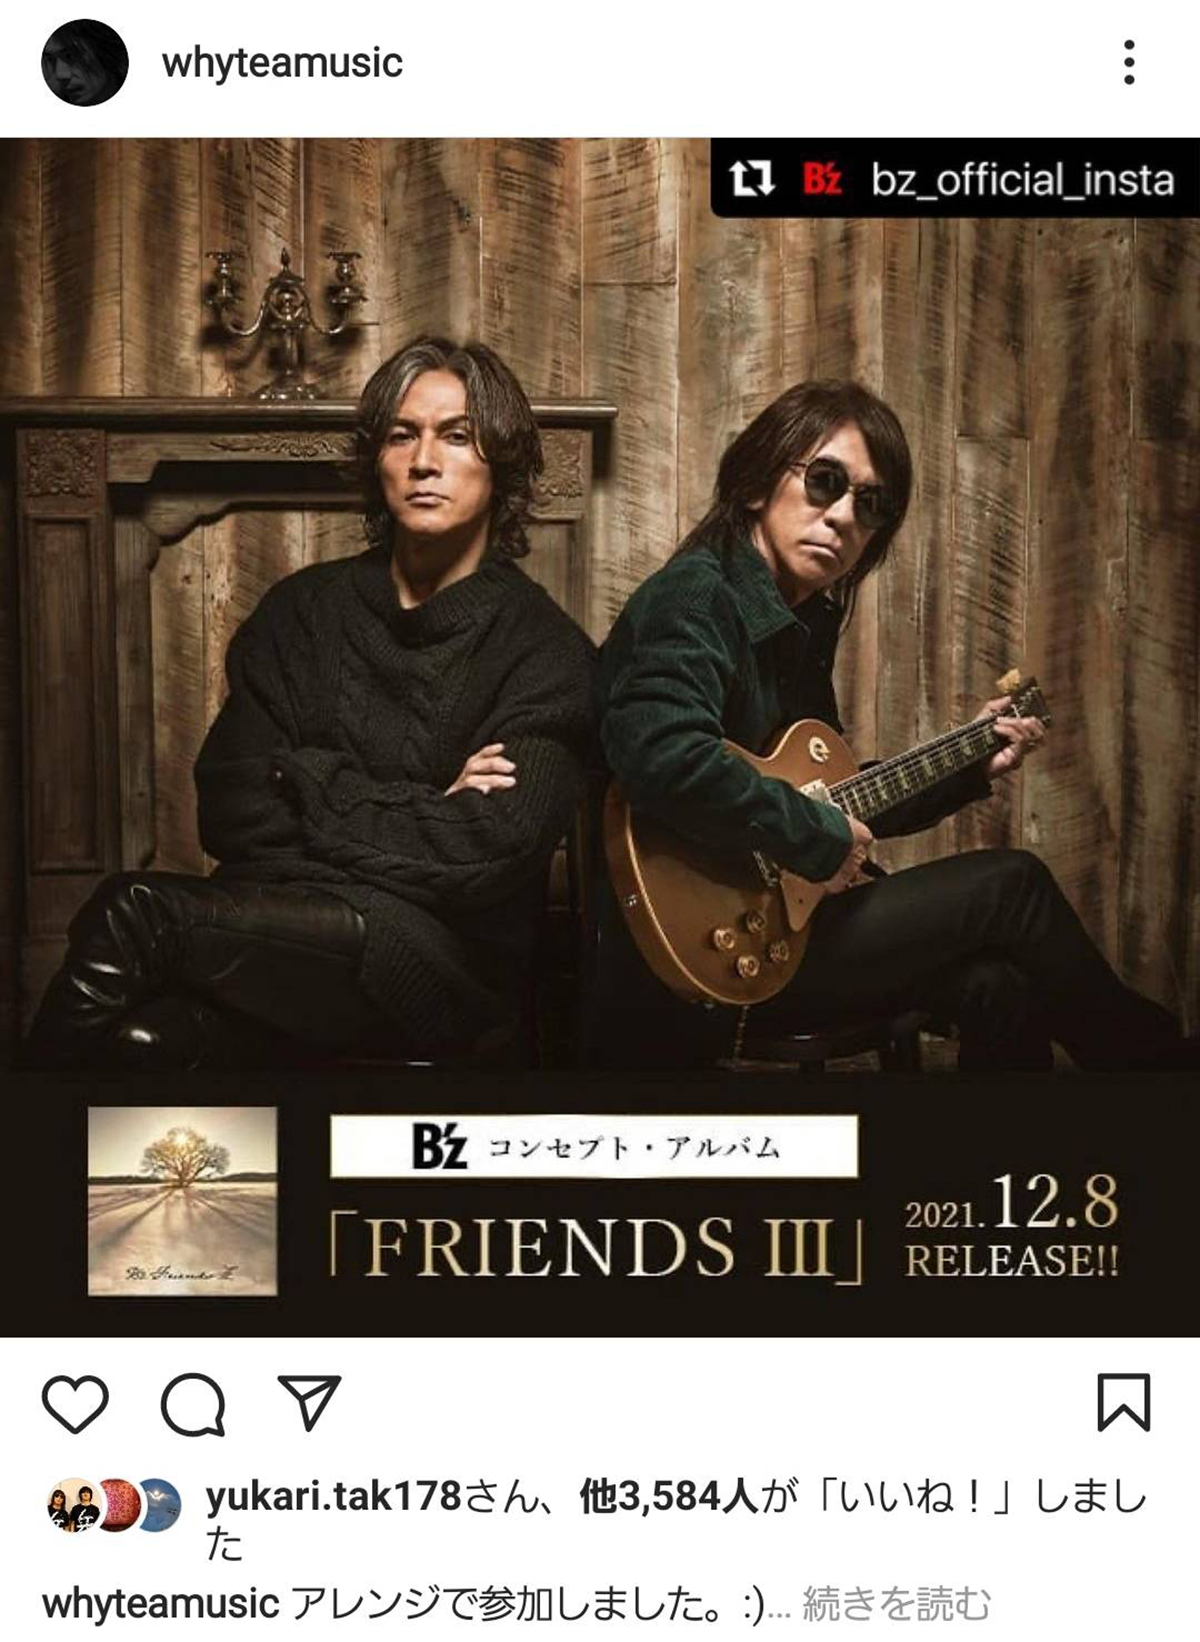 Yukihide "YT" TakiyamaがB'z『FRIENDS Ⅲ』にアレンジで参加したことを伝えるInstagram投稿の画像